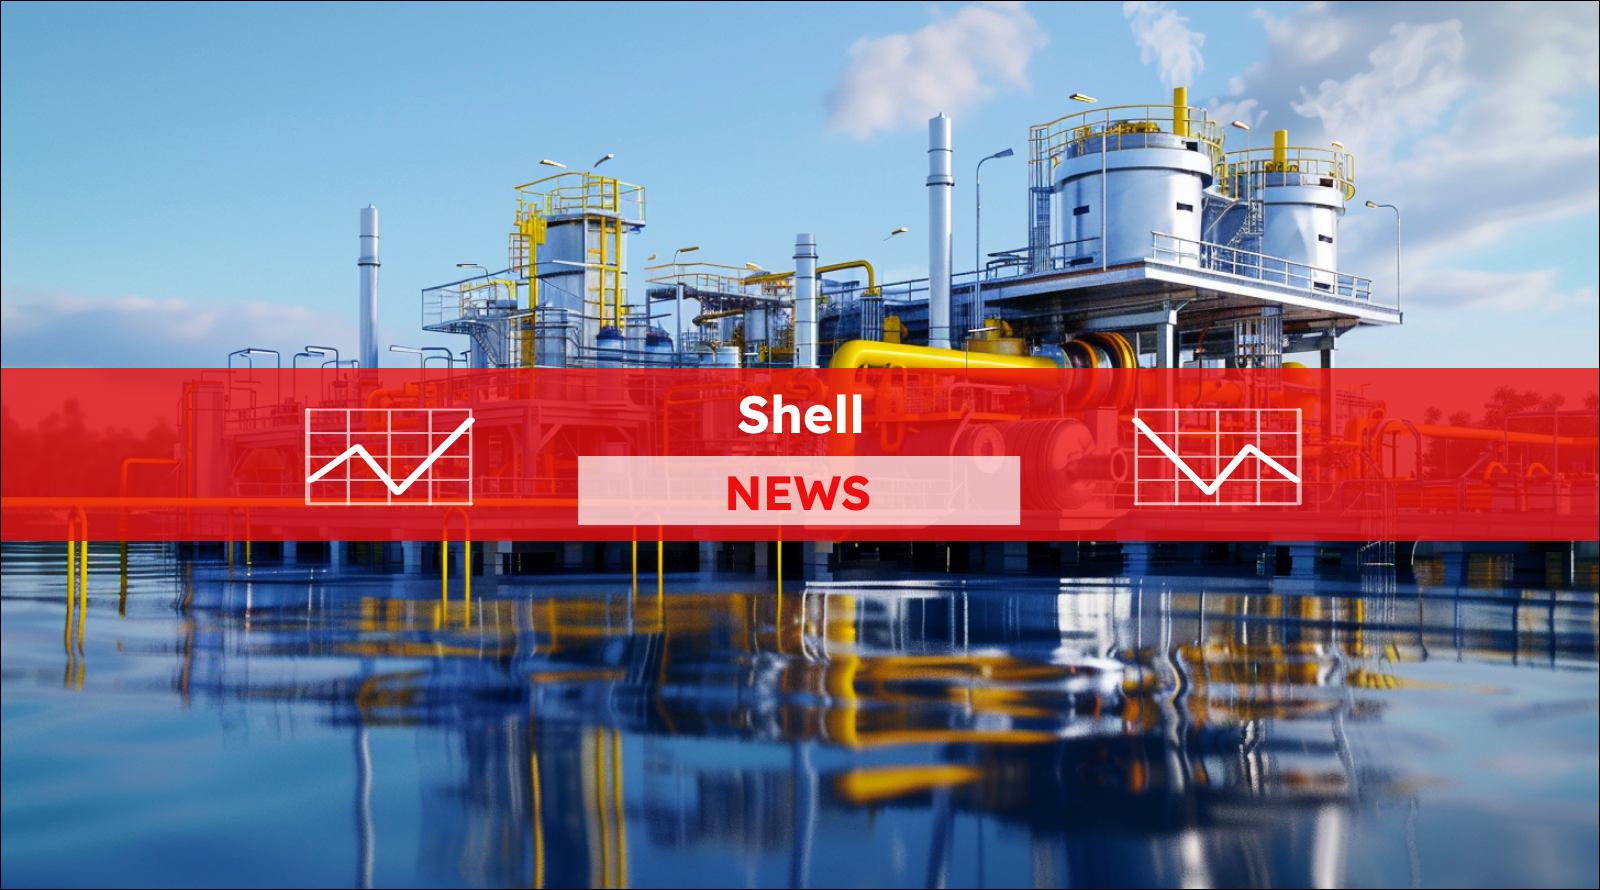 Energiesystem zur Ölförderung auf dem Wasser, mit einem Shell NEWS Banner.